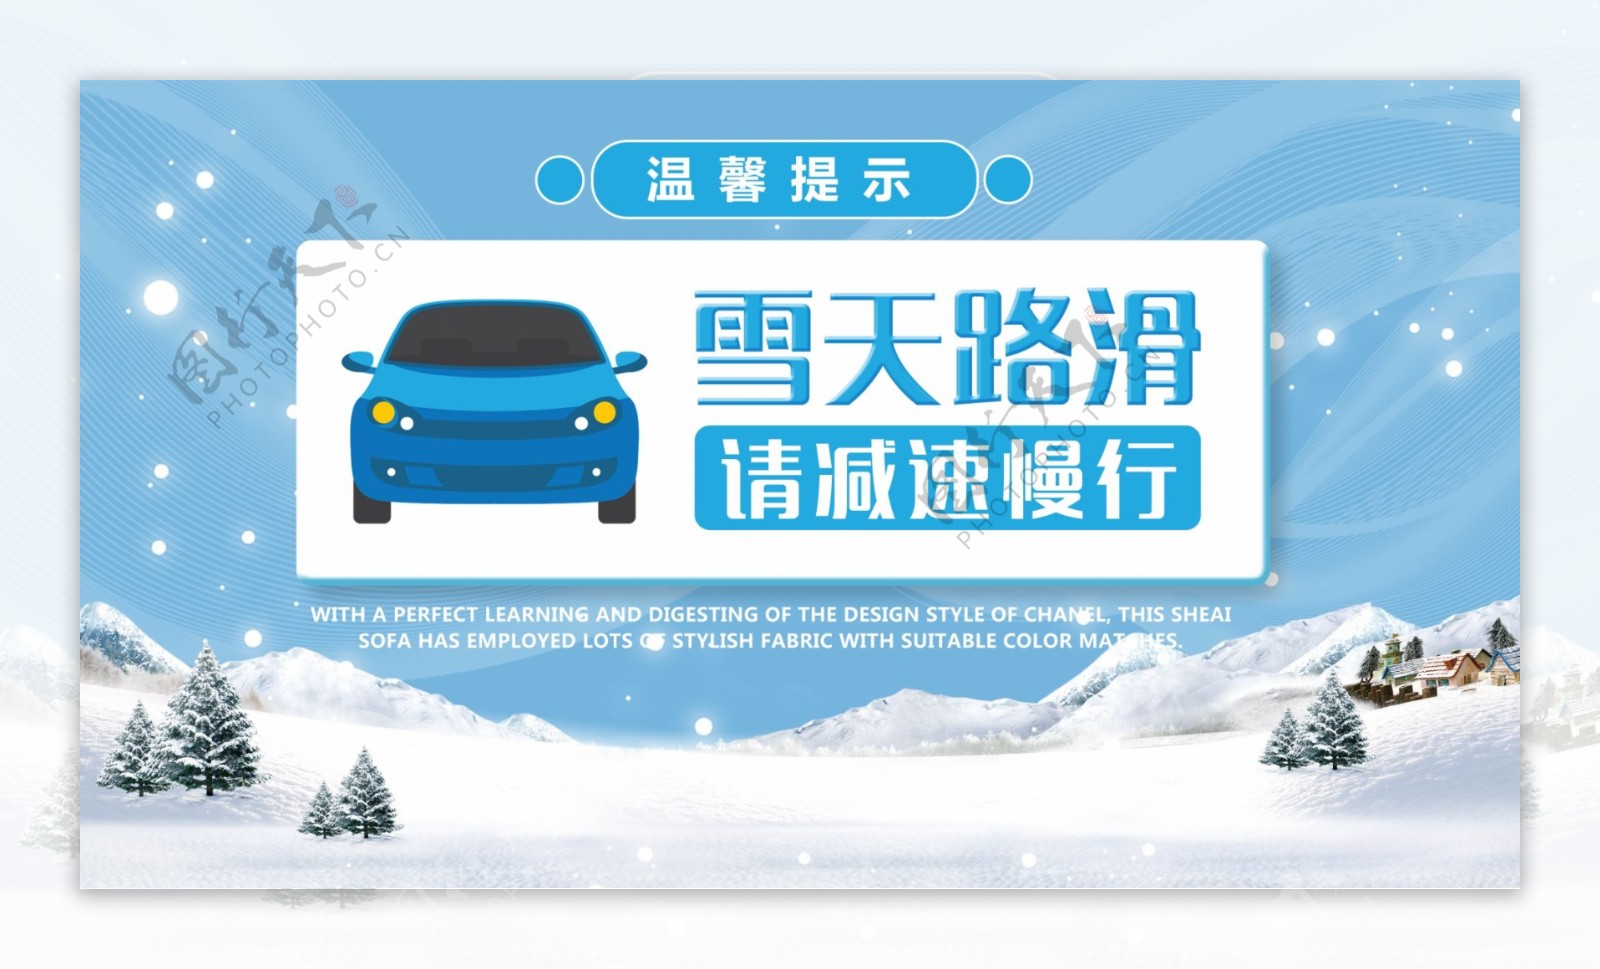 浅蓝冬季雪天路滑安全驾驶温馨提示展板